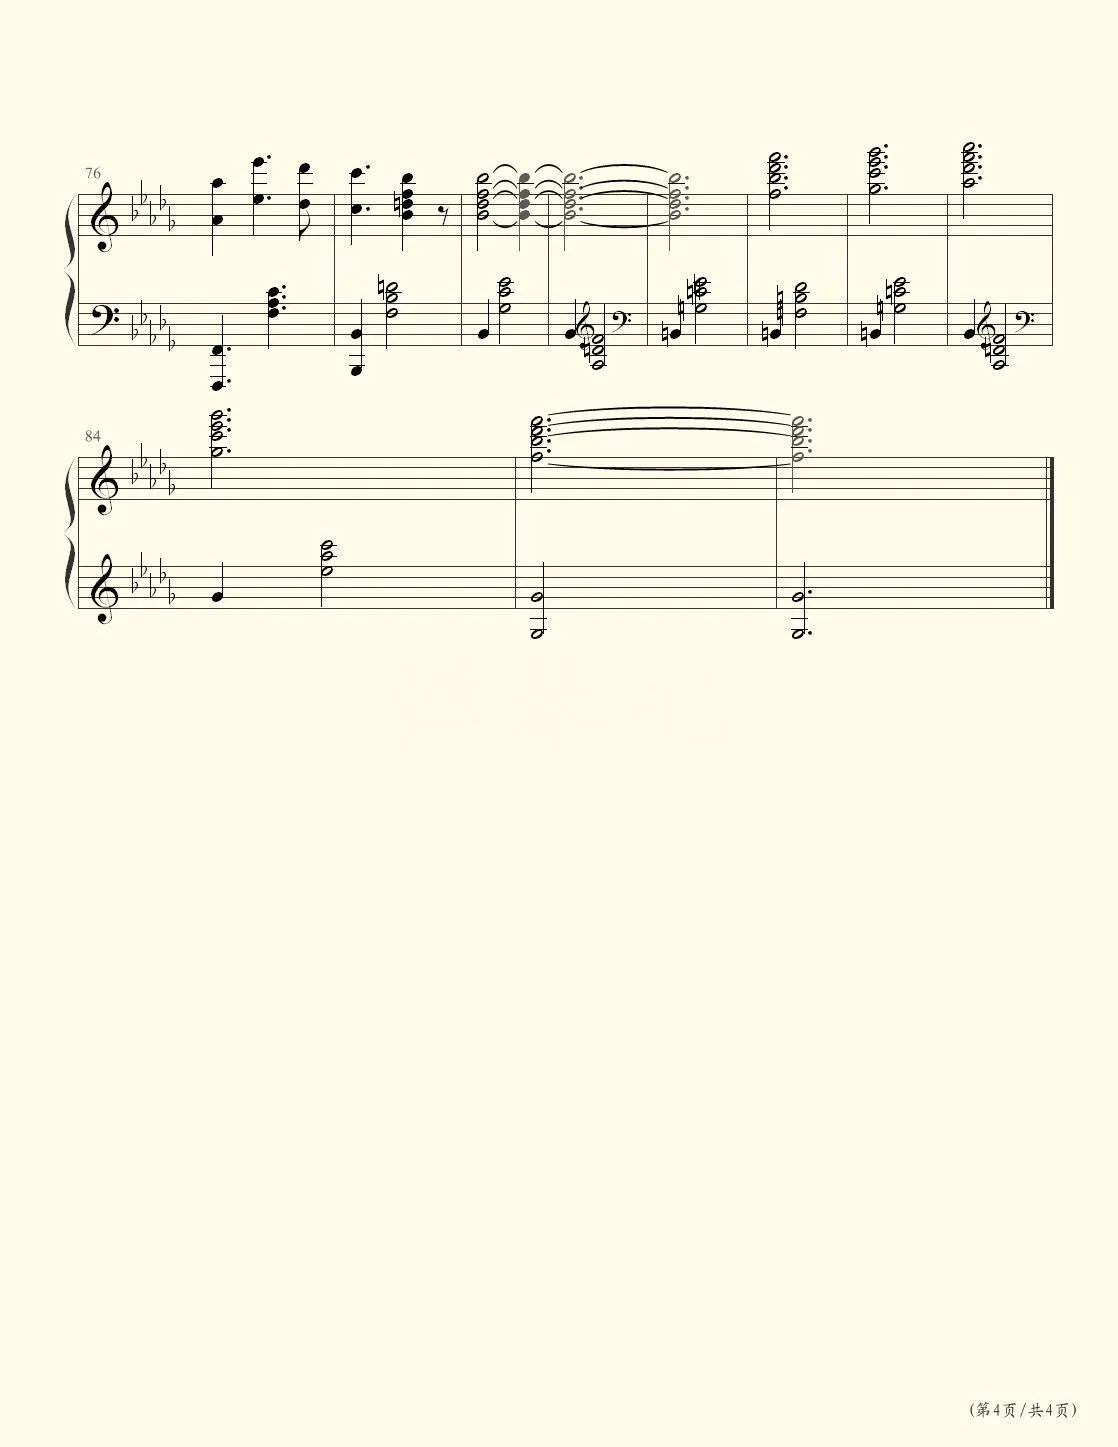 イザベラの唄-伊莎贝拉的摇篮曲-约定的梦幻岛OST五线谱预览2-钢琴谱文件（五线谱、双手简谱、数字谱、Midi、PDF）免费下载